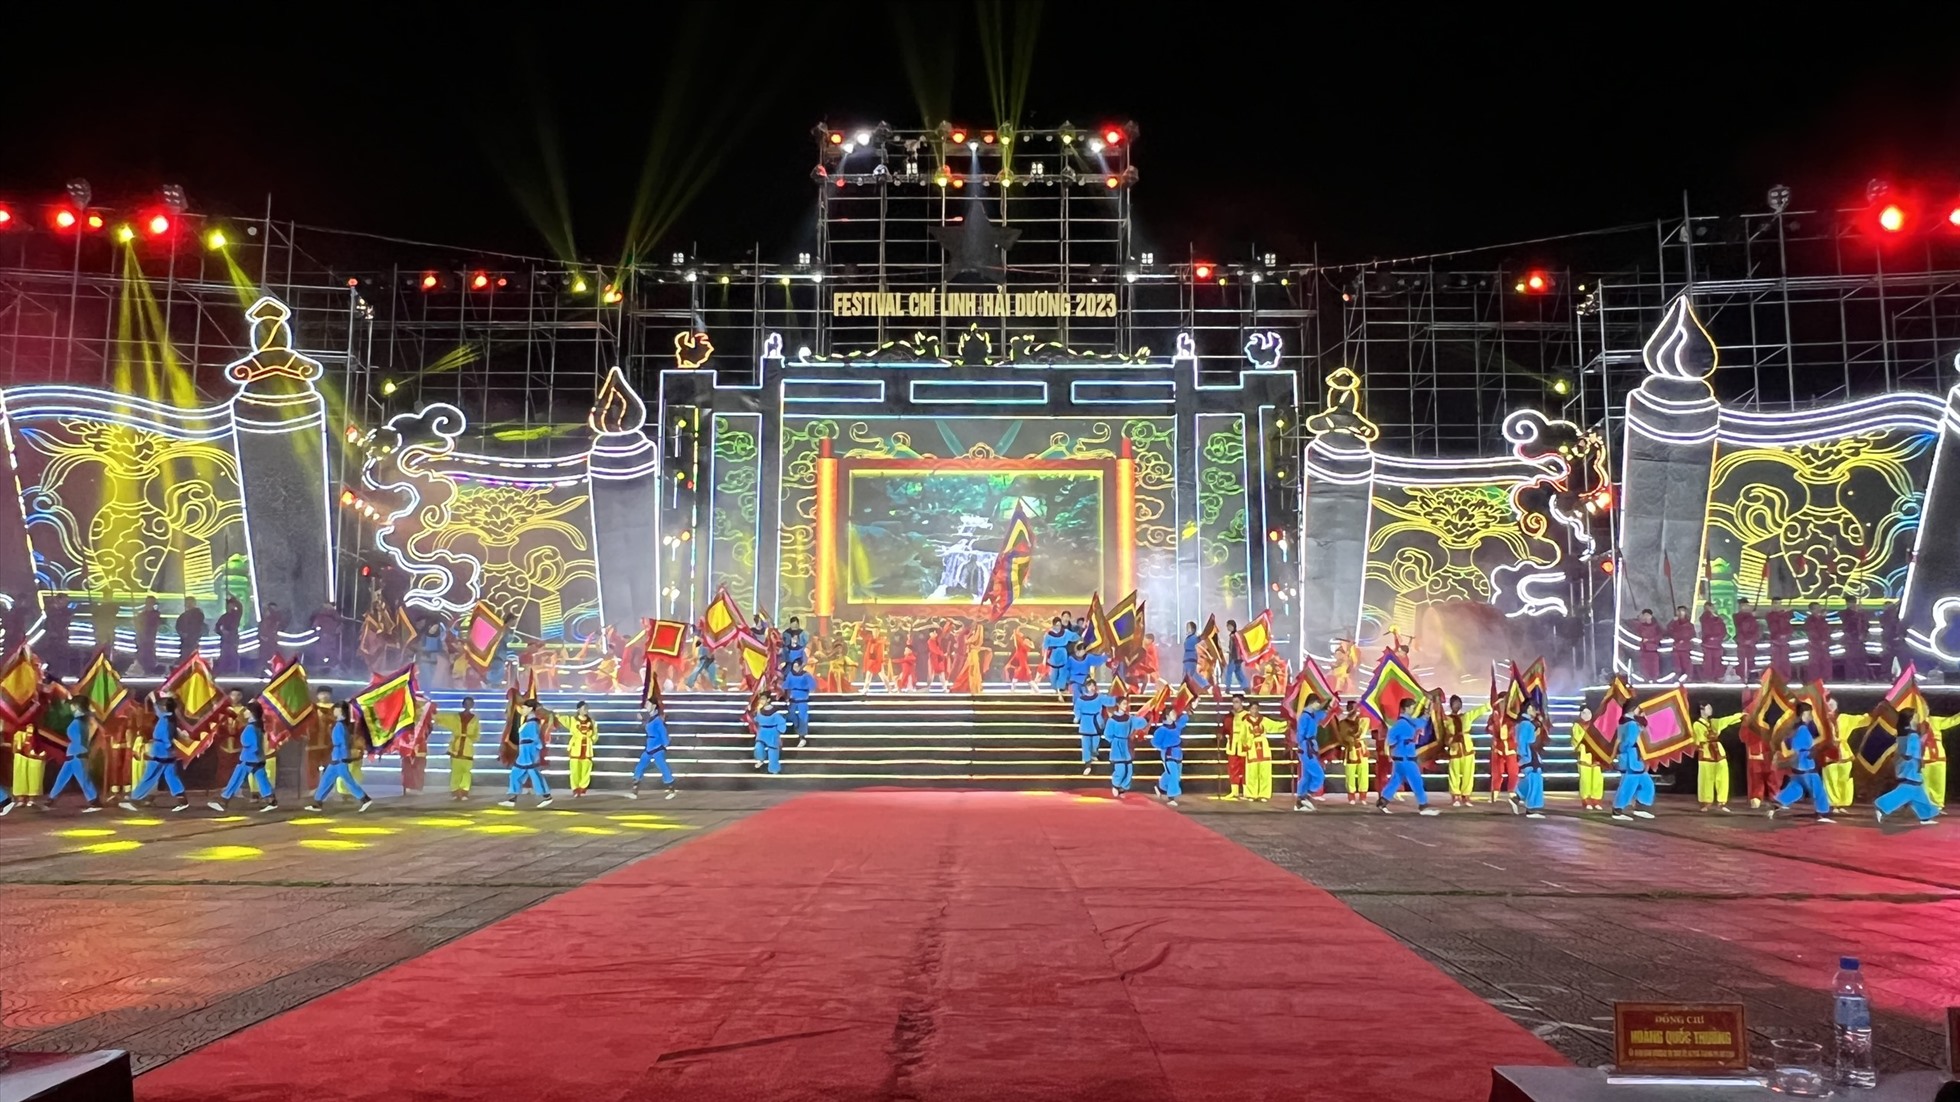 Mãn nhãn chương trình nghệ thuật chào mừng Festival Chí Linh Hải Dương 2023. Ảnh: Sở TTTT Hải Dương